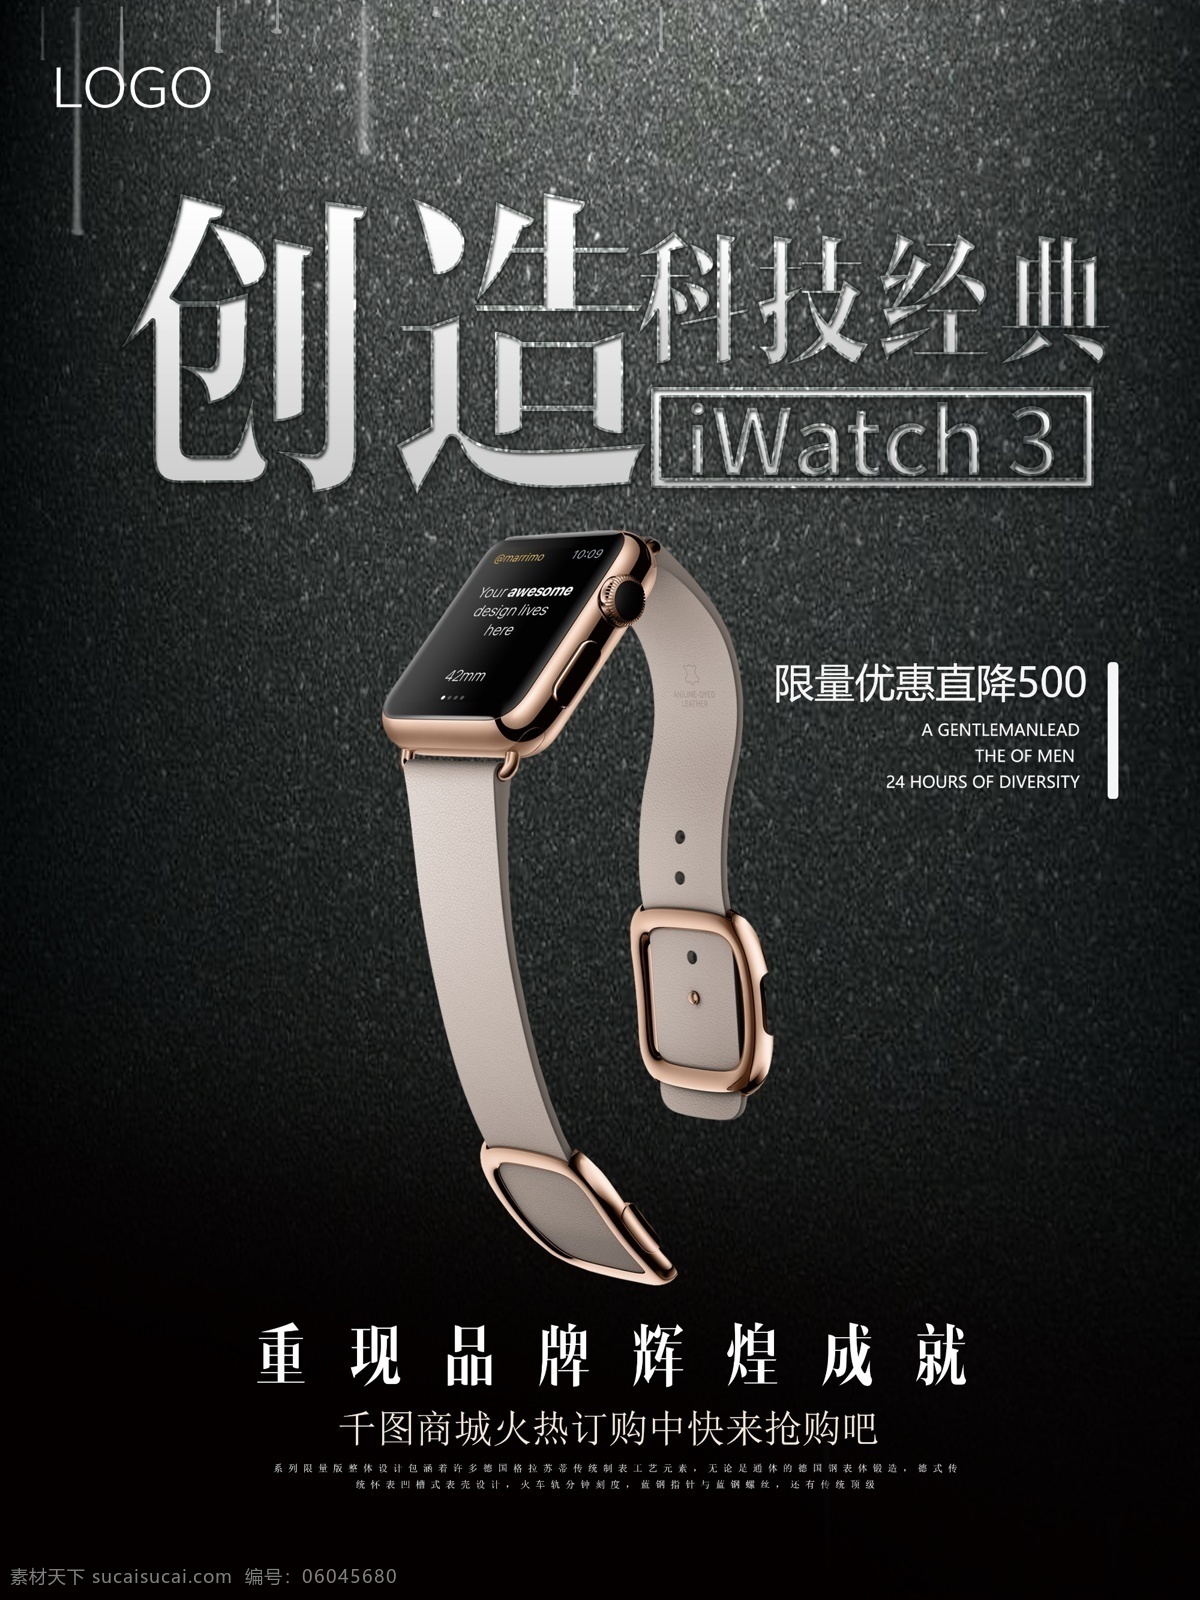 苹果 手表 创造 科技 经典 宣传海报 神秘新品 新表上市 苹果手表配件 预售贴膜 苹果产品海报 iwatch 海报 数码电器